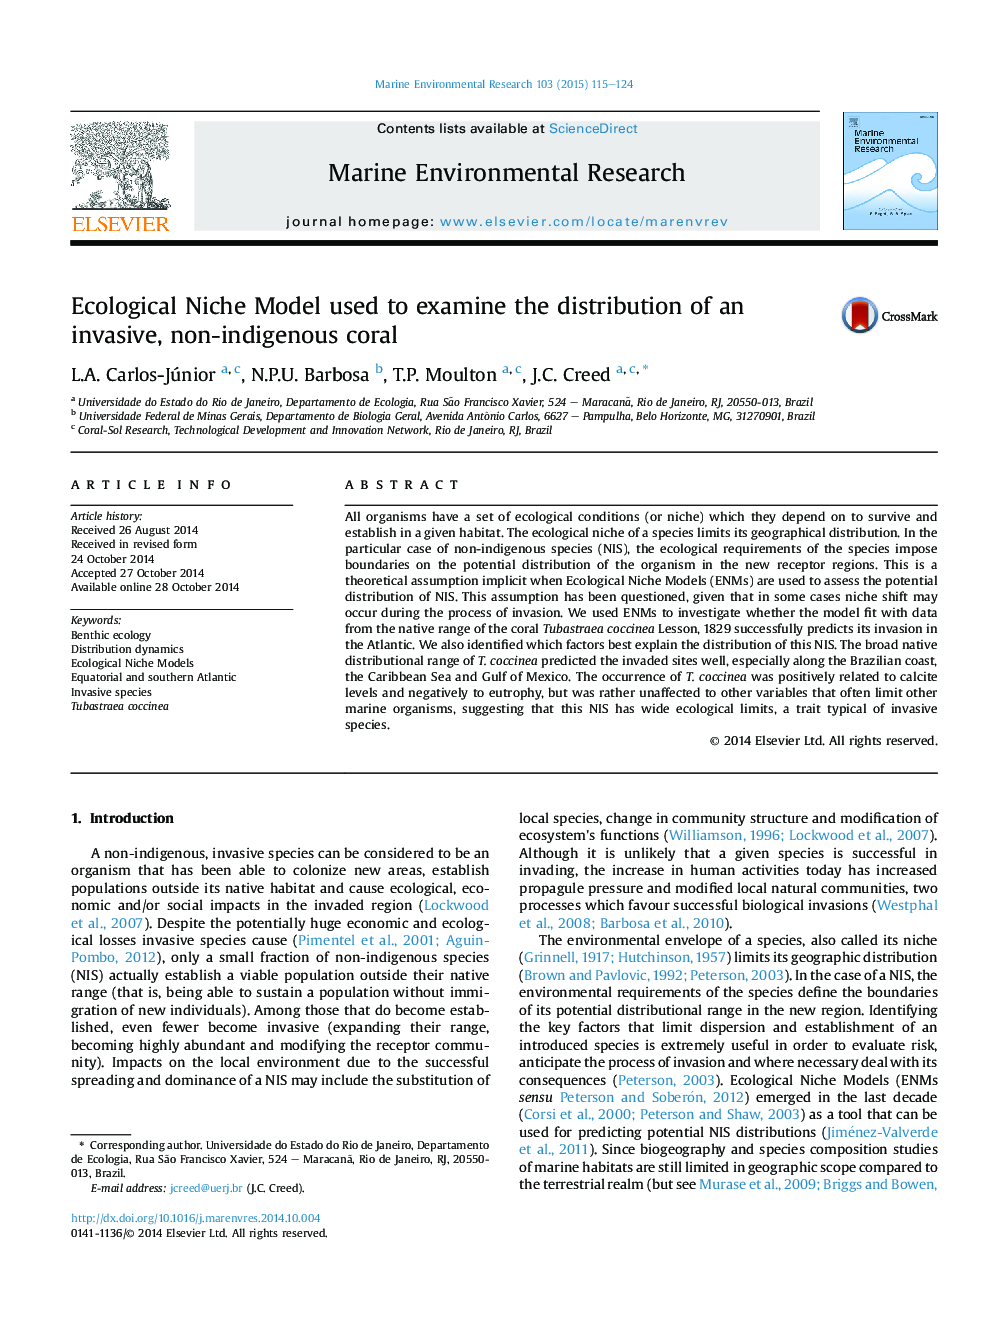 مدل توجیهی اکولوژیکی مورد استفاده برای بررسی توزیع مرجان مهاجم و غیر بومی 